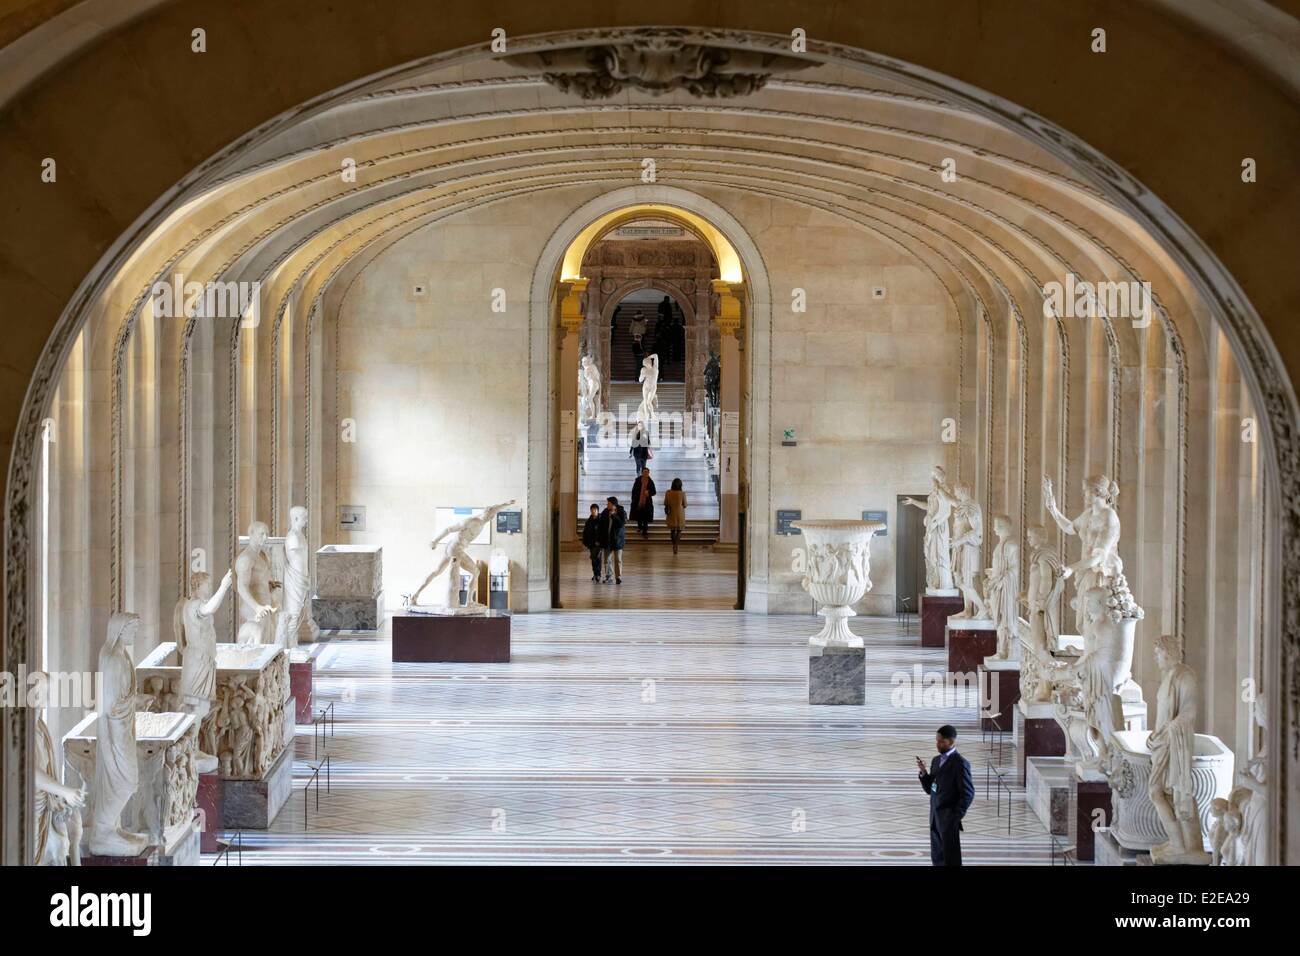 France, Paris, Louvre museum, vestibule Denon Stock Photo